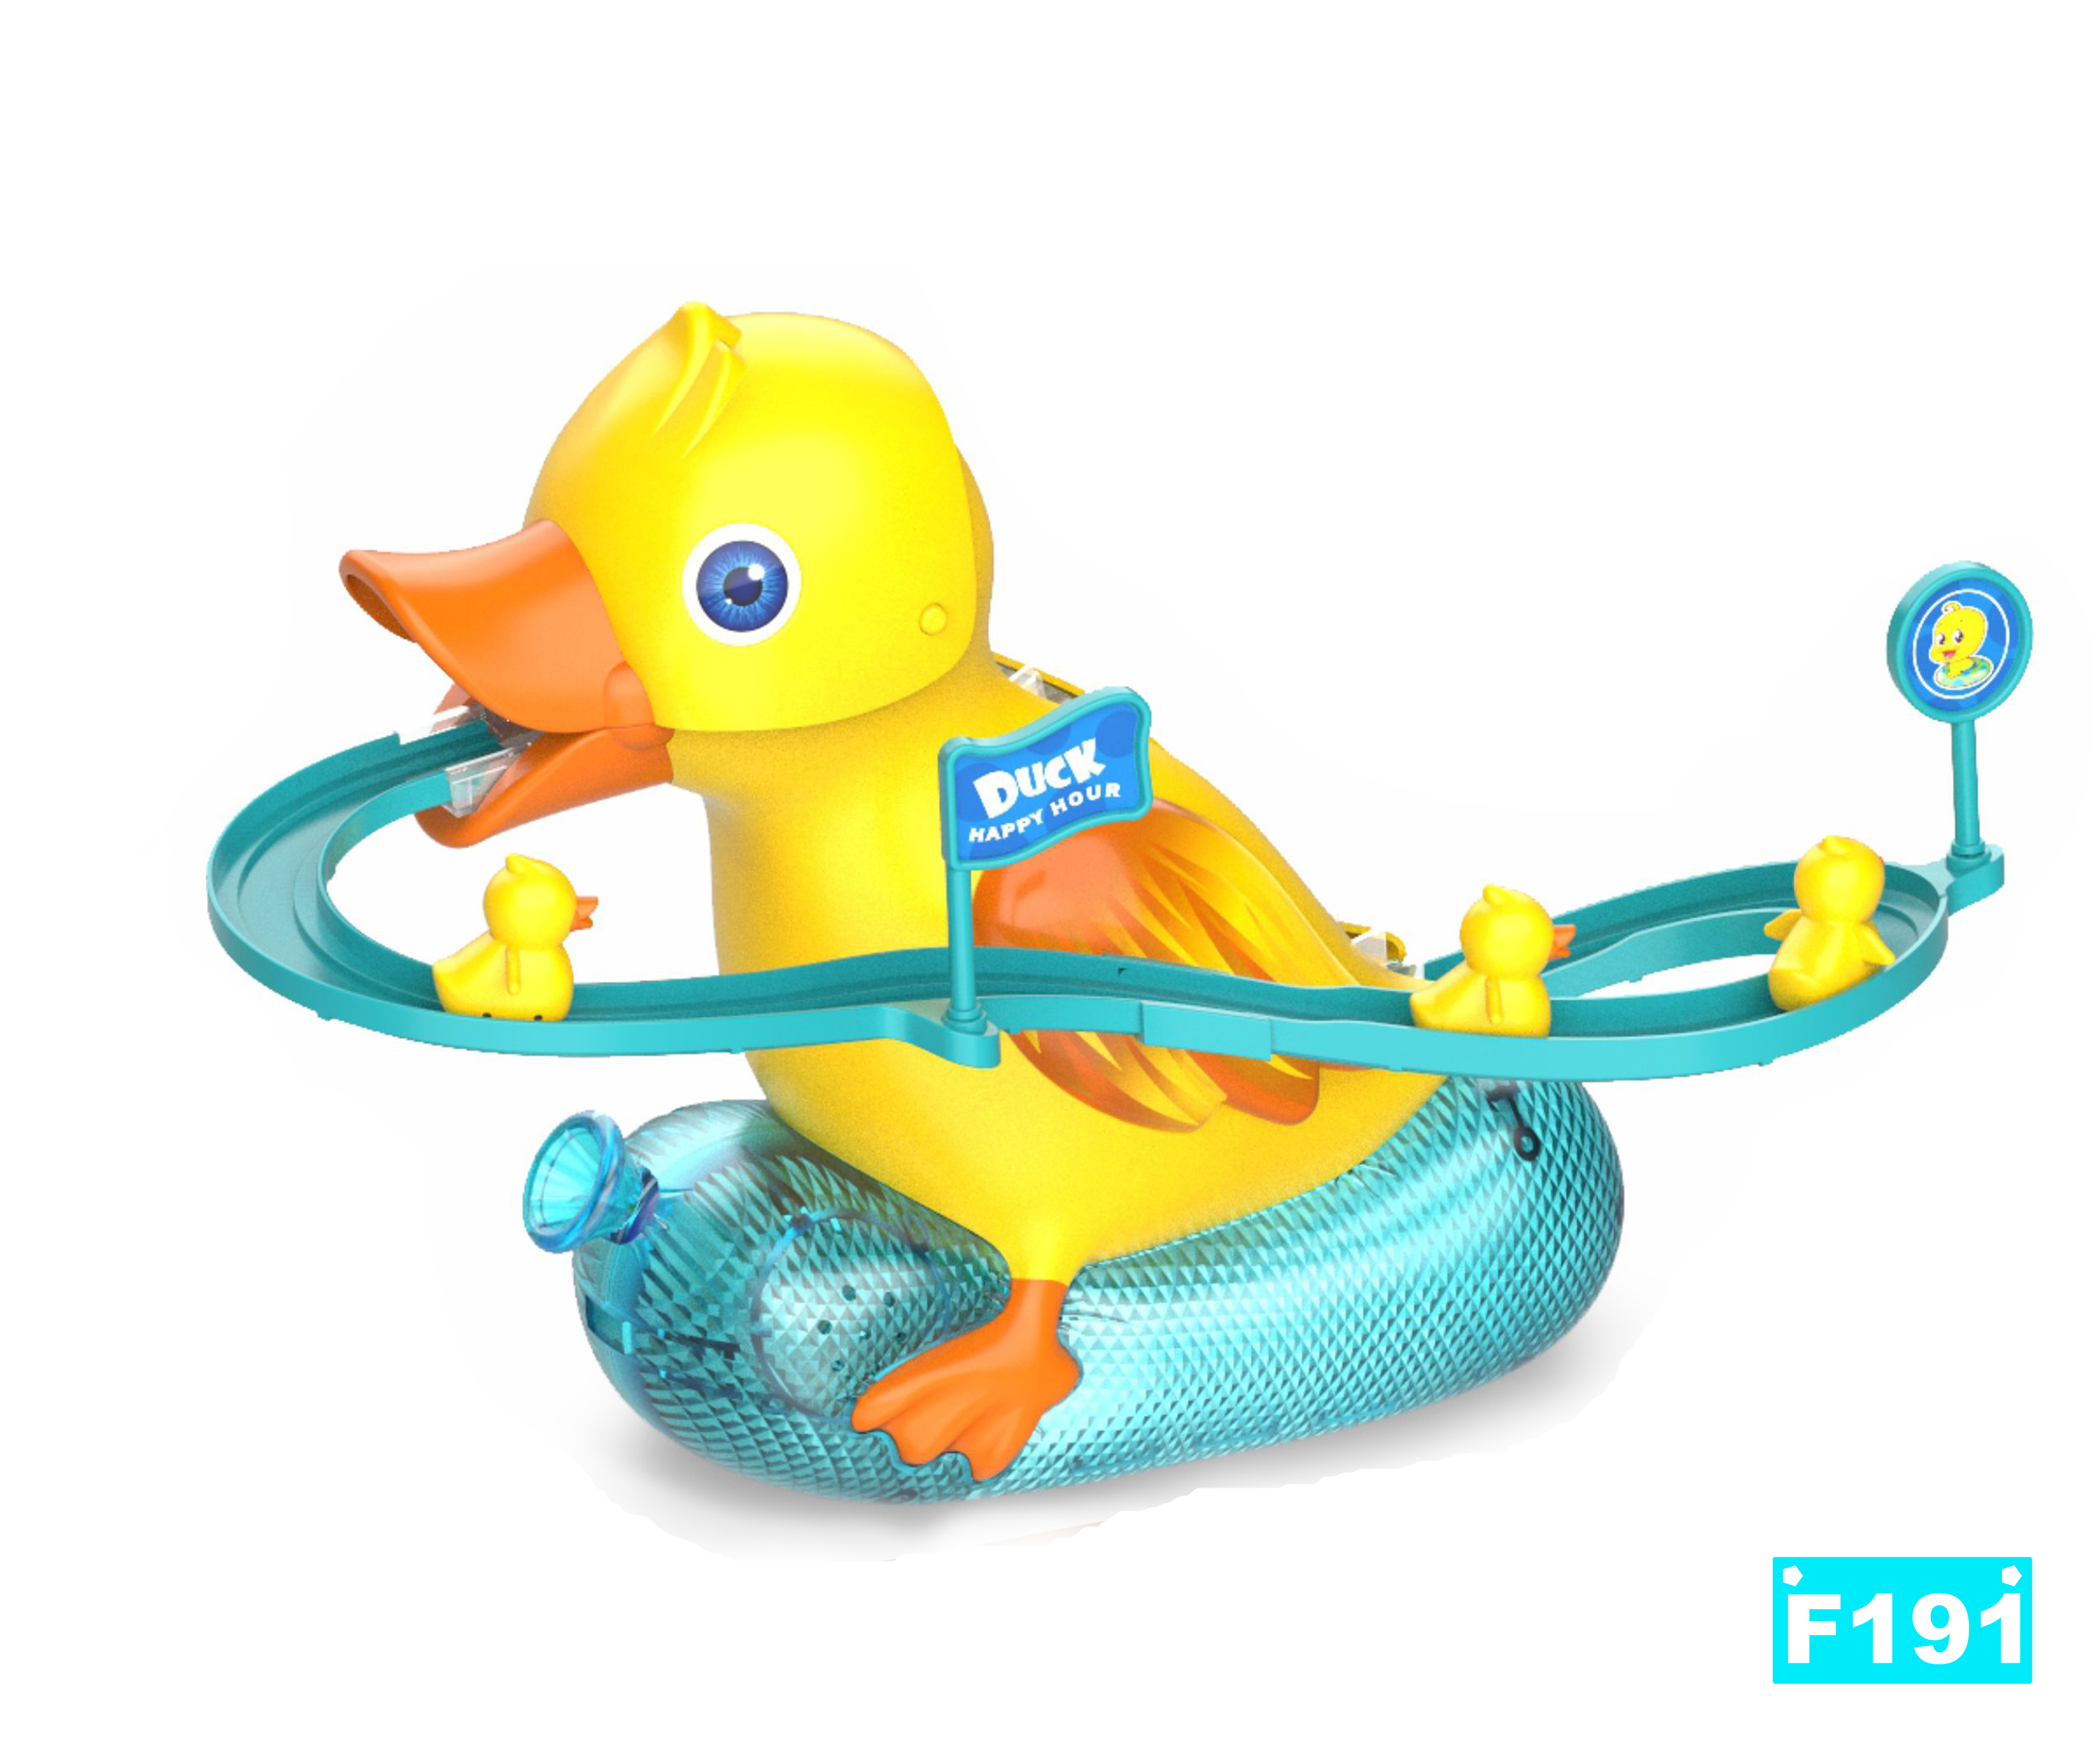 小鸭子爬楼梯 鸭子滑梯轨道玩具 外贸玩具 电动玩具 智能玩具 TOYS 小黄鸭玩具 JUGUETE图